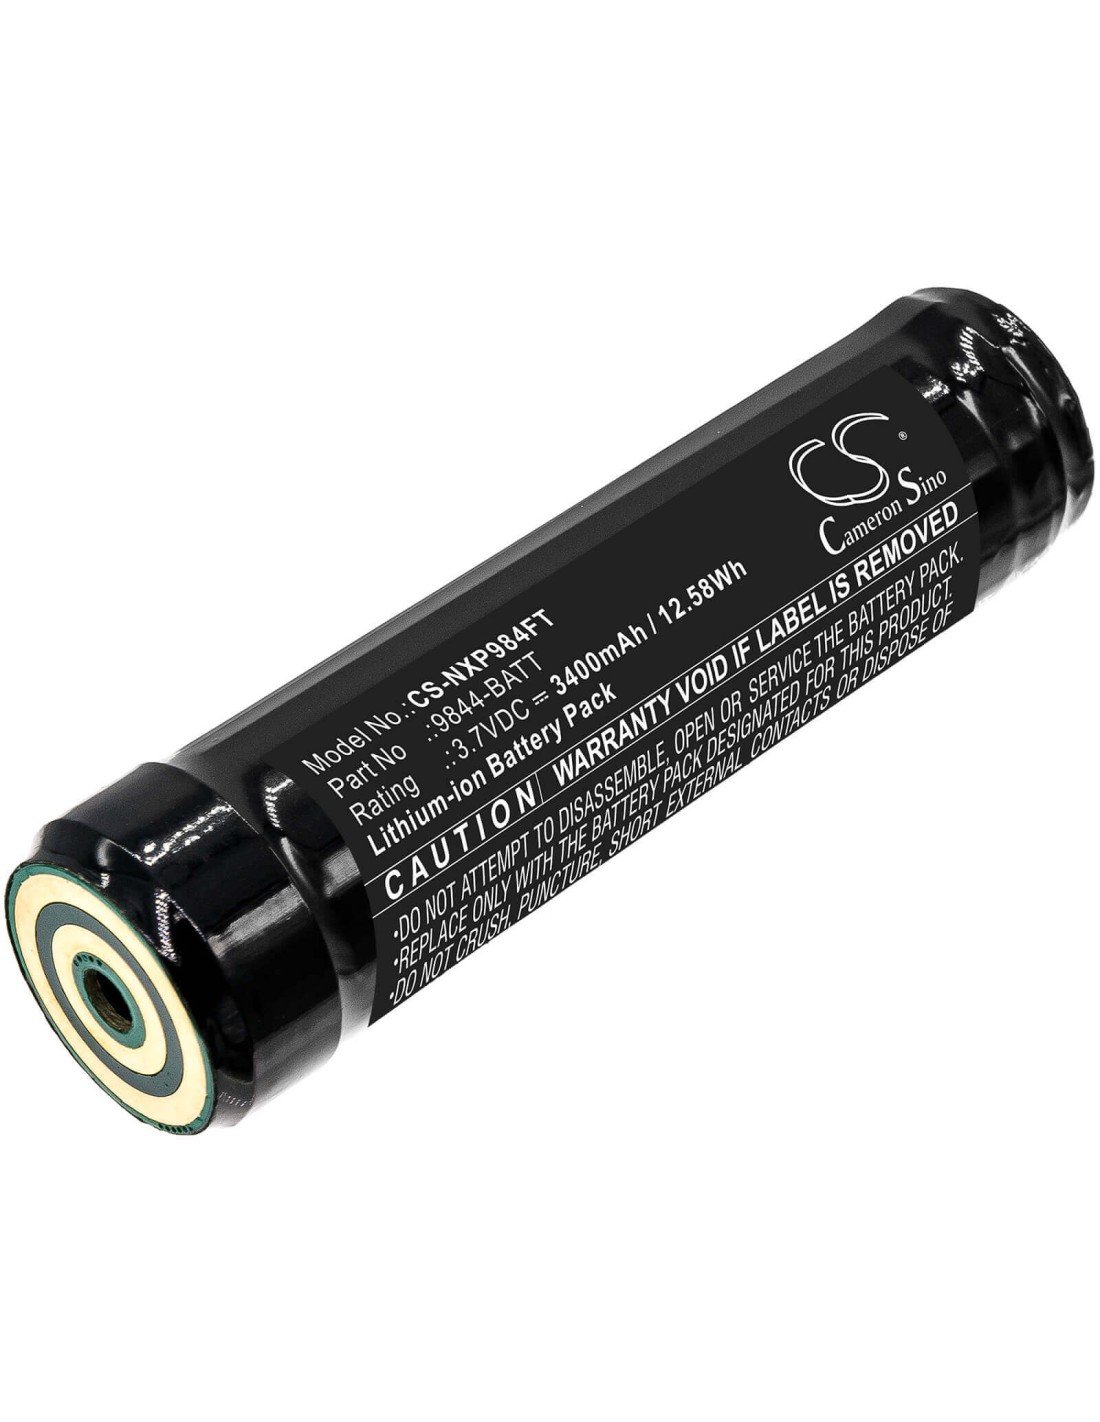 Battery for Nightstick, Nsp-9842xl, Nsr-9844xl, Usb-578xl 3.7V, 3400mAh - 12.58Wh